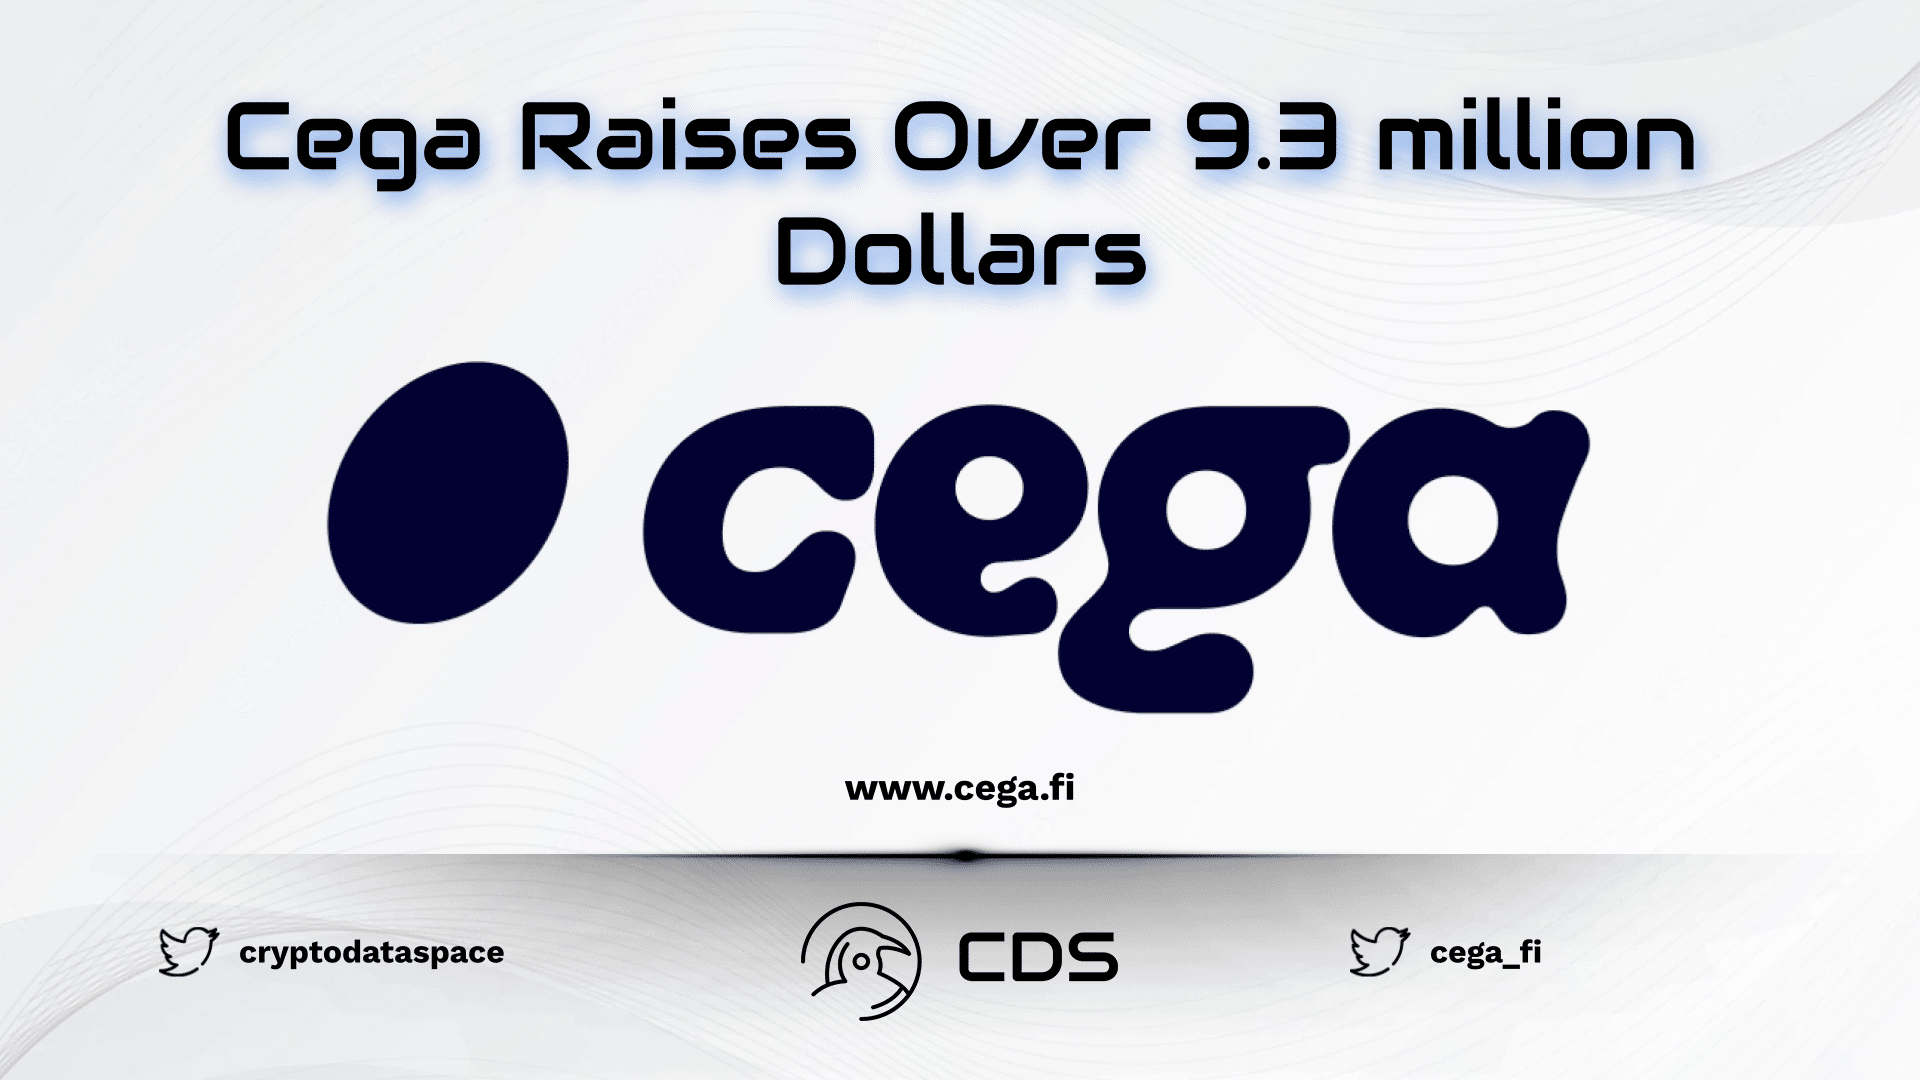 Cega Raises Over 9.3 million Dollars